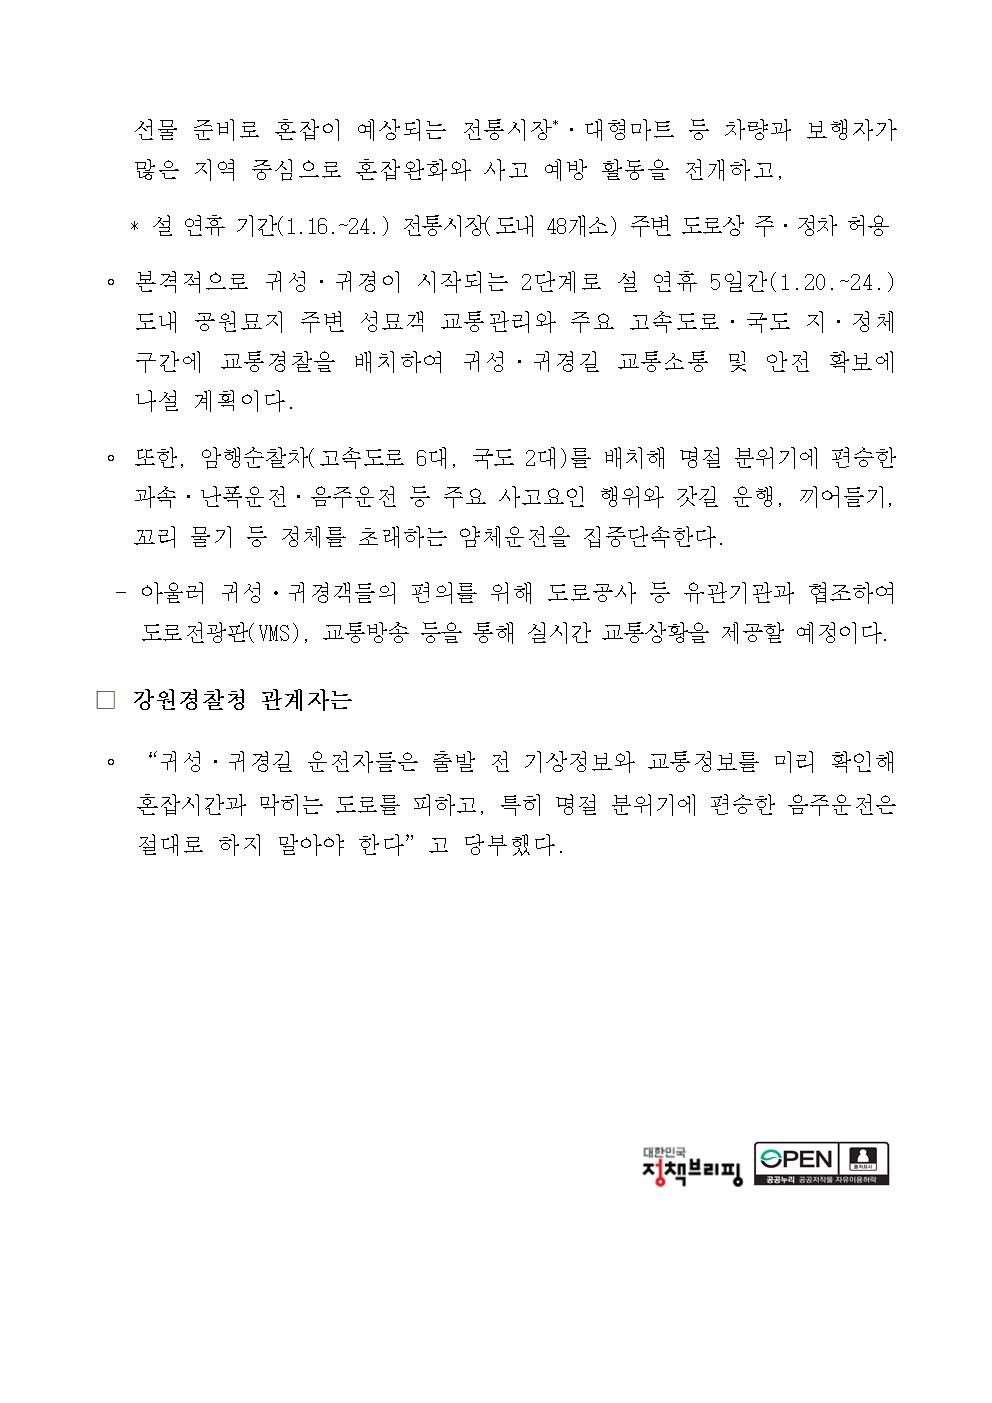 강원경찰, 설 연휴 특별 교통관리 나서 -강원경찰, 설 연휴 특별 교통관리 나서 002